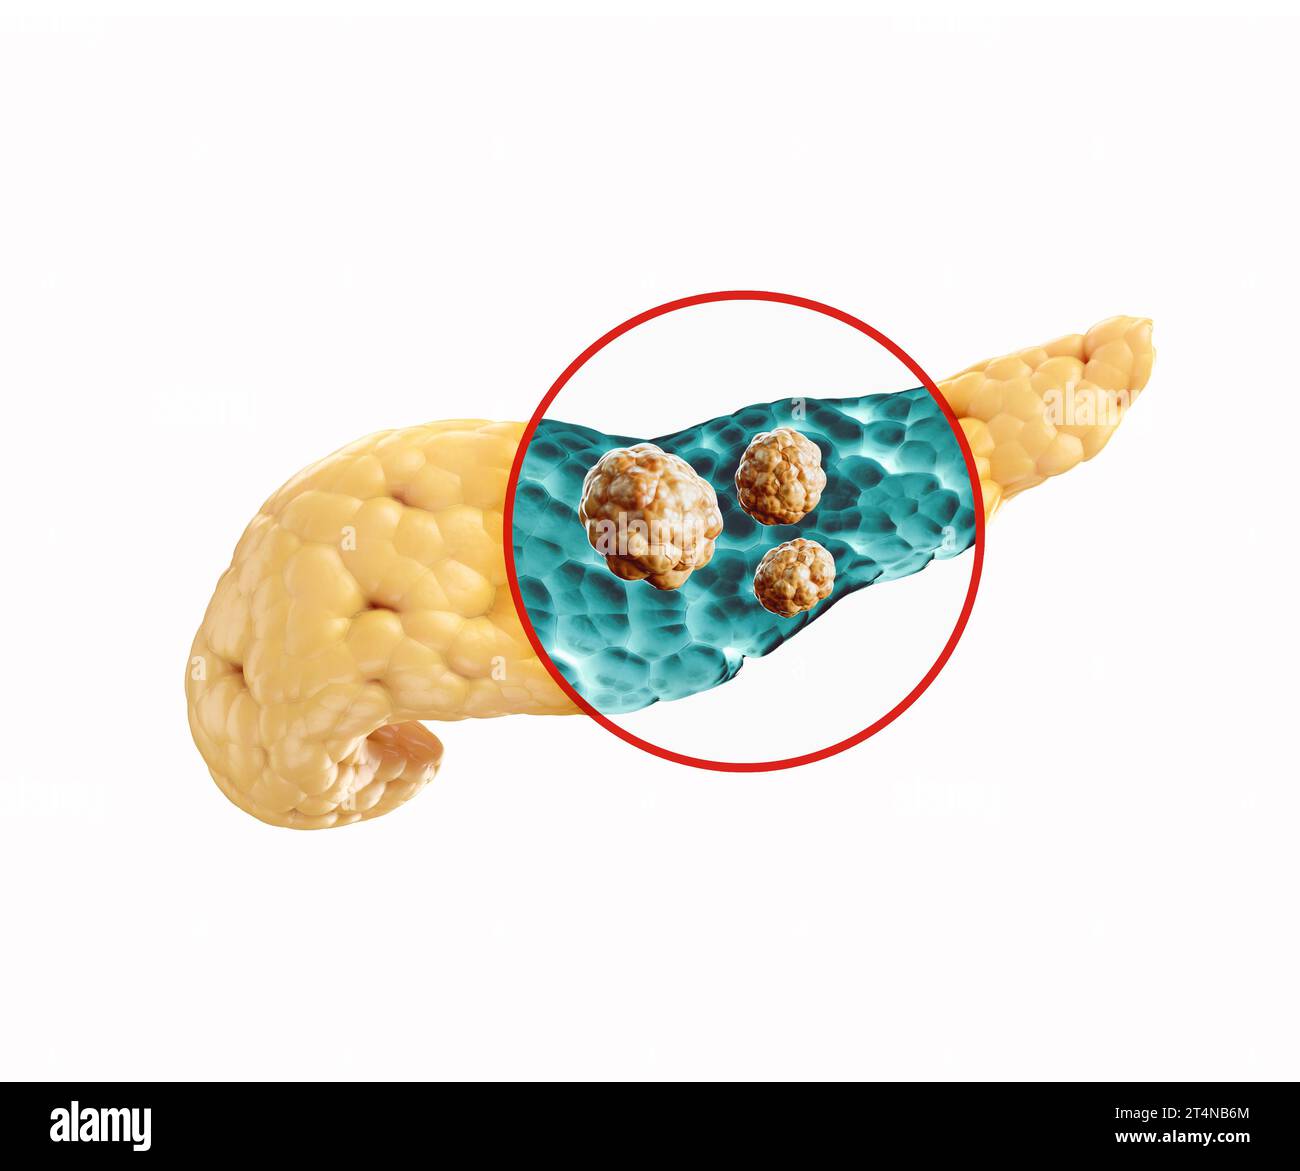 Anatomie de l'illustration réaliste 3d de l'organe interne humain - pancréas. Radiographie du pancréas humain à la recherche d'une maladie cancéreuse Banque D'Images